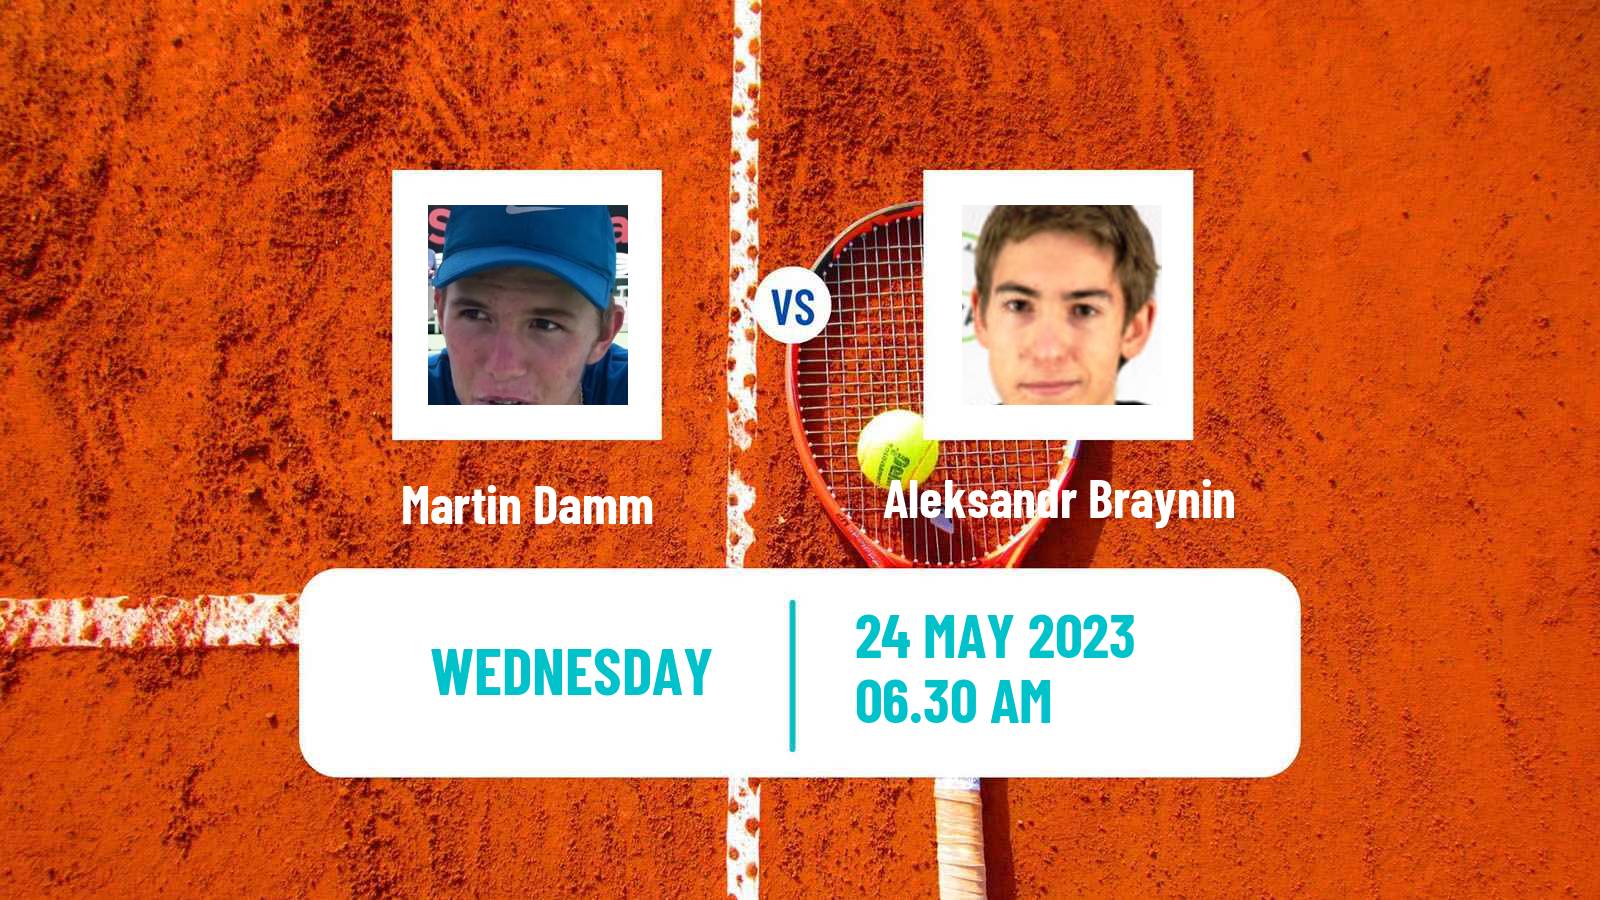 Tennis ITF M25 Most Men Martin Damm - Aleksandr Braynin